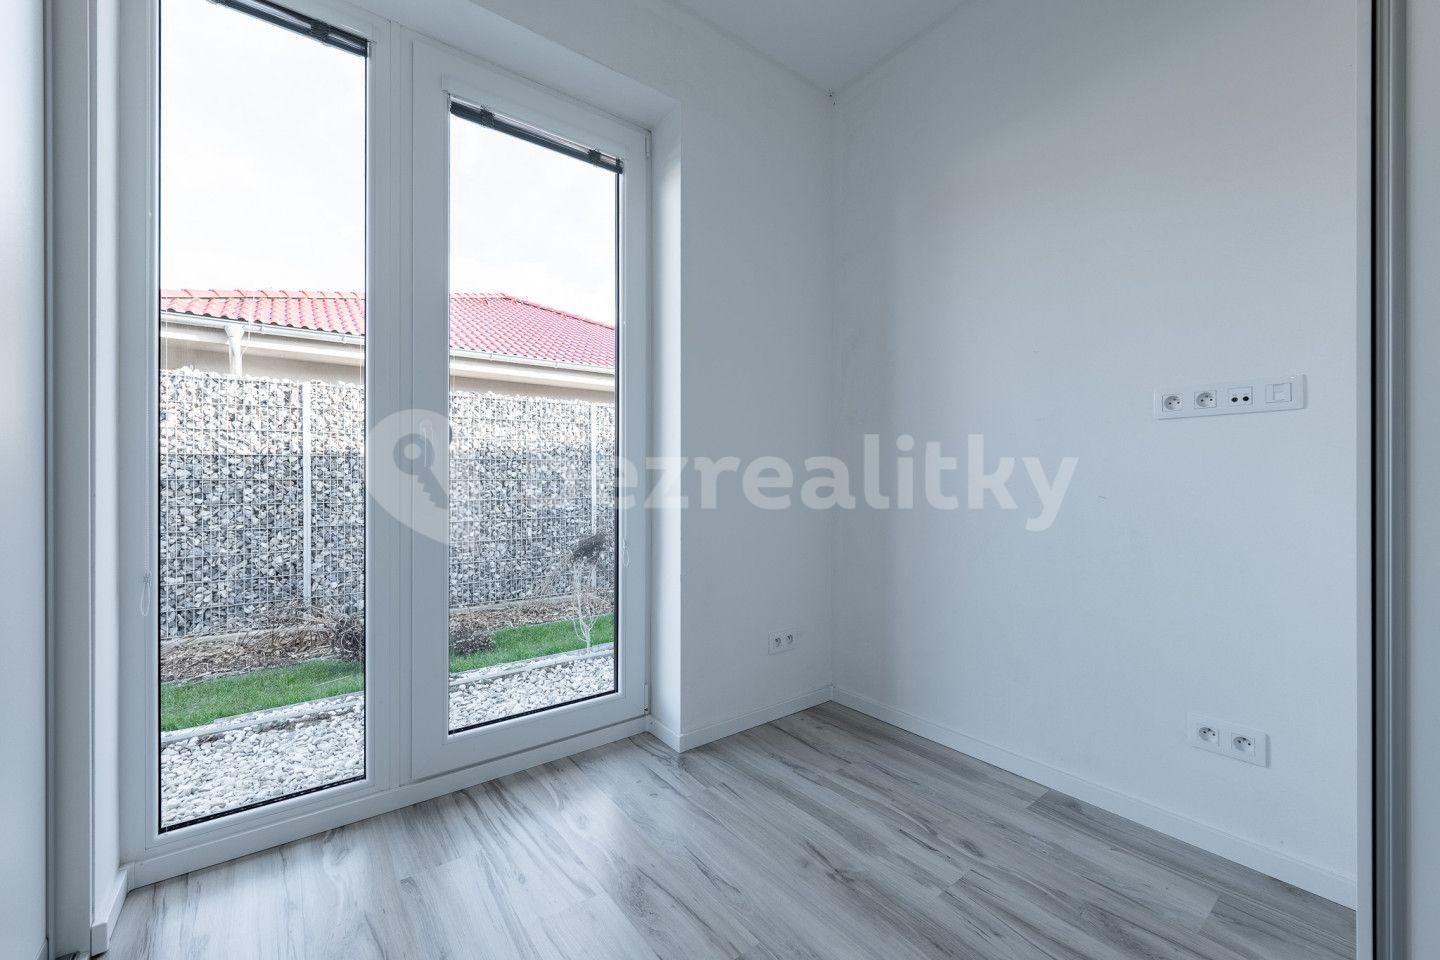 2 bedroom with open-plan kitchen flat for sale, 82 m², Mutěnice, Jihočeský Region